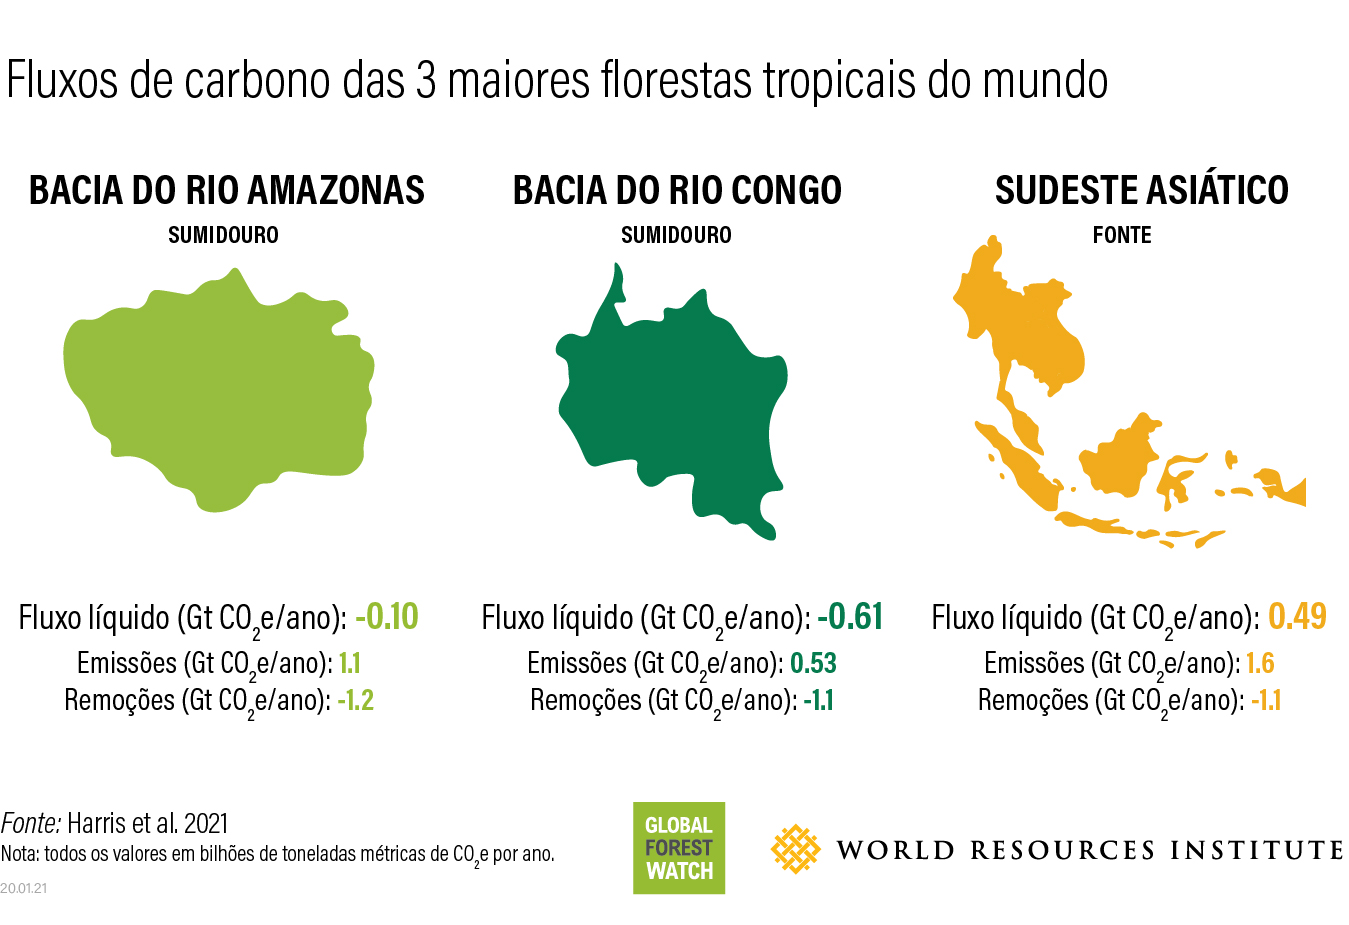 Fluxos de carbono nas florestas tropicais